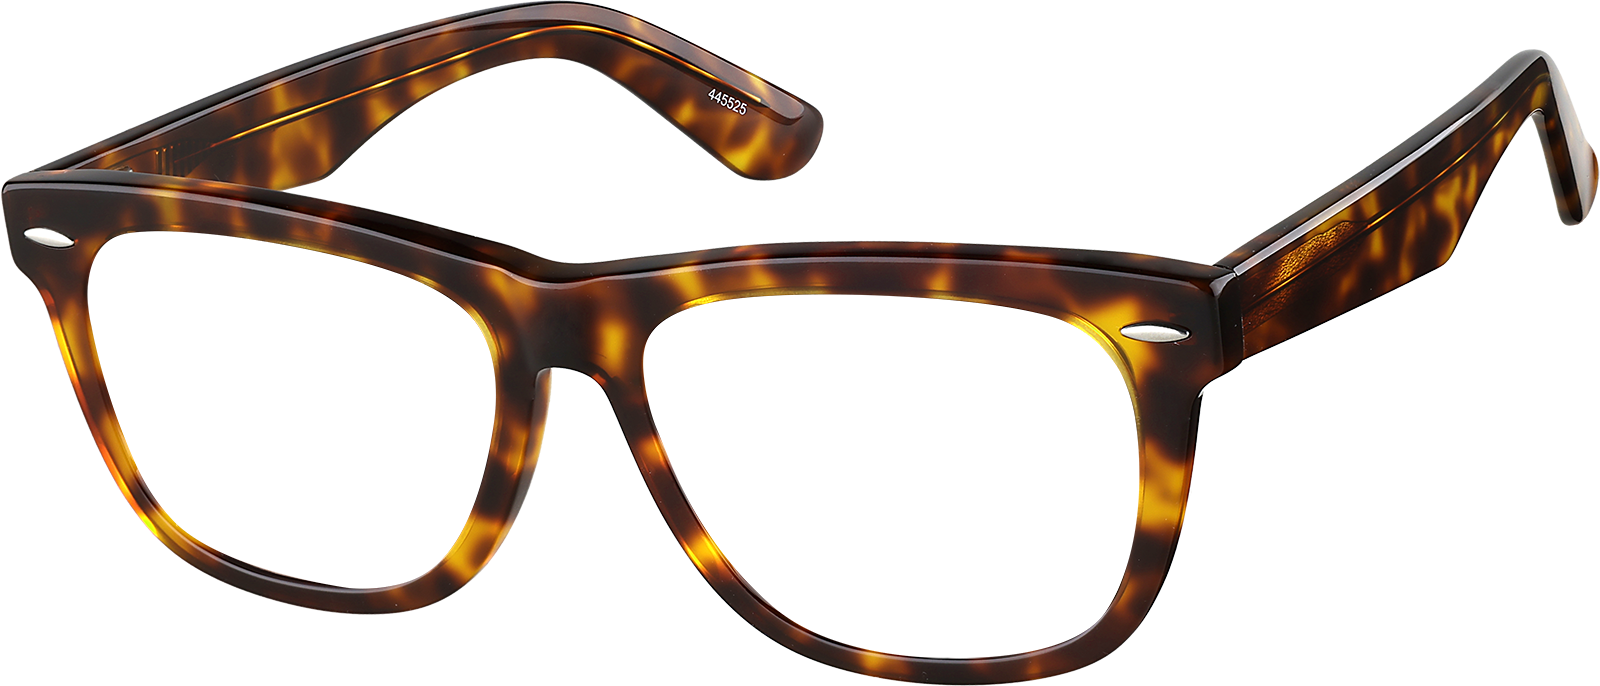 Bodega Eyeglassesangle frame image